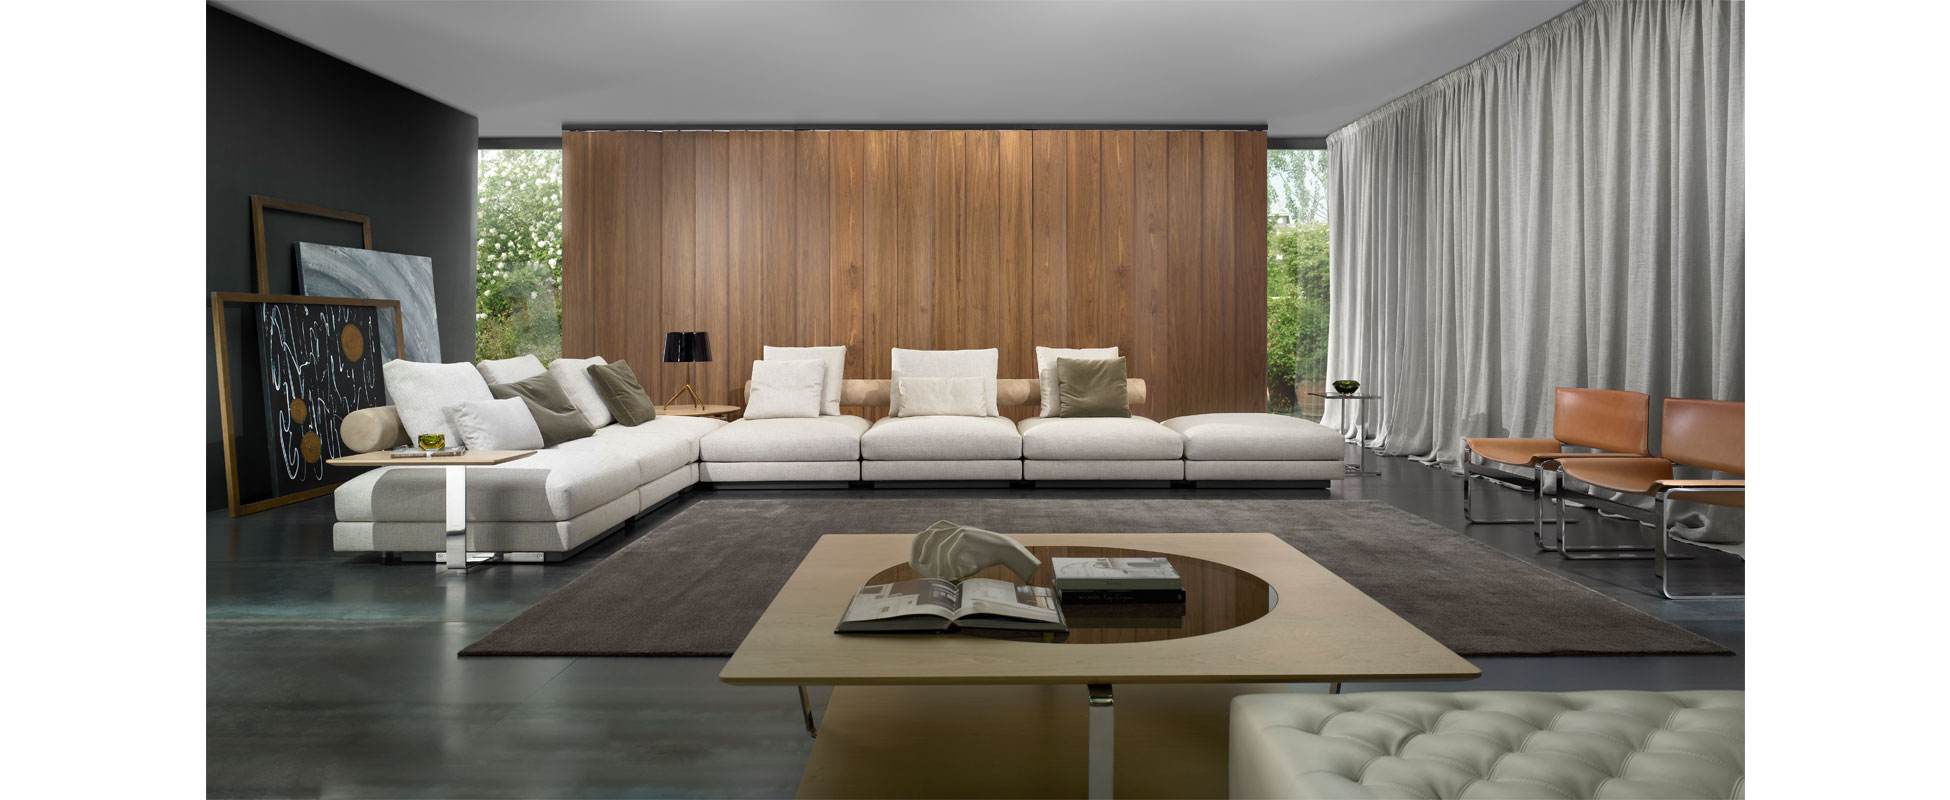 absceso pasado Motear Longjoy – CasaDesús – Furniture Design Barcelona